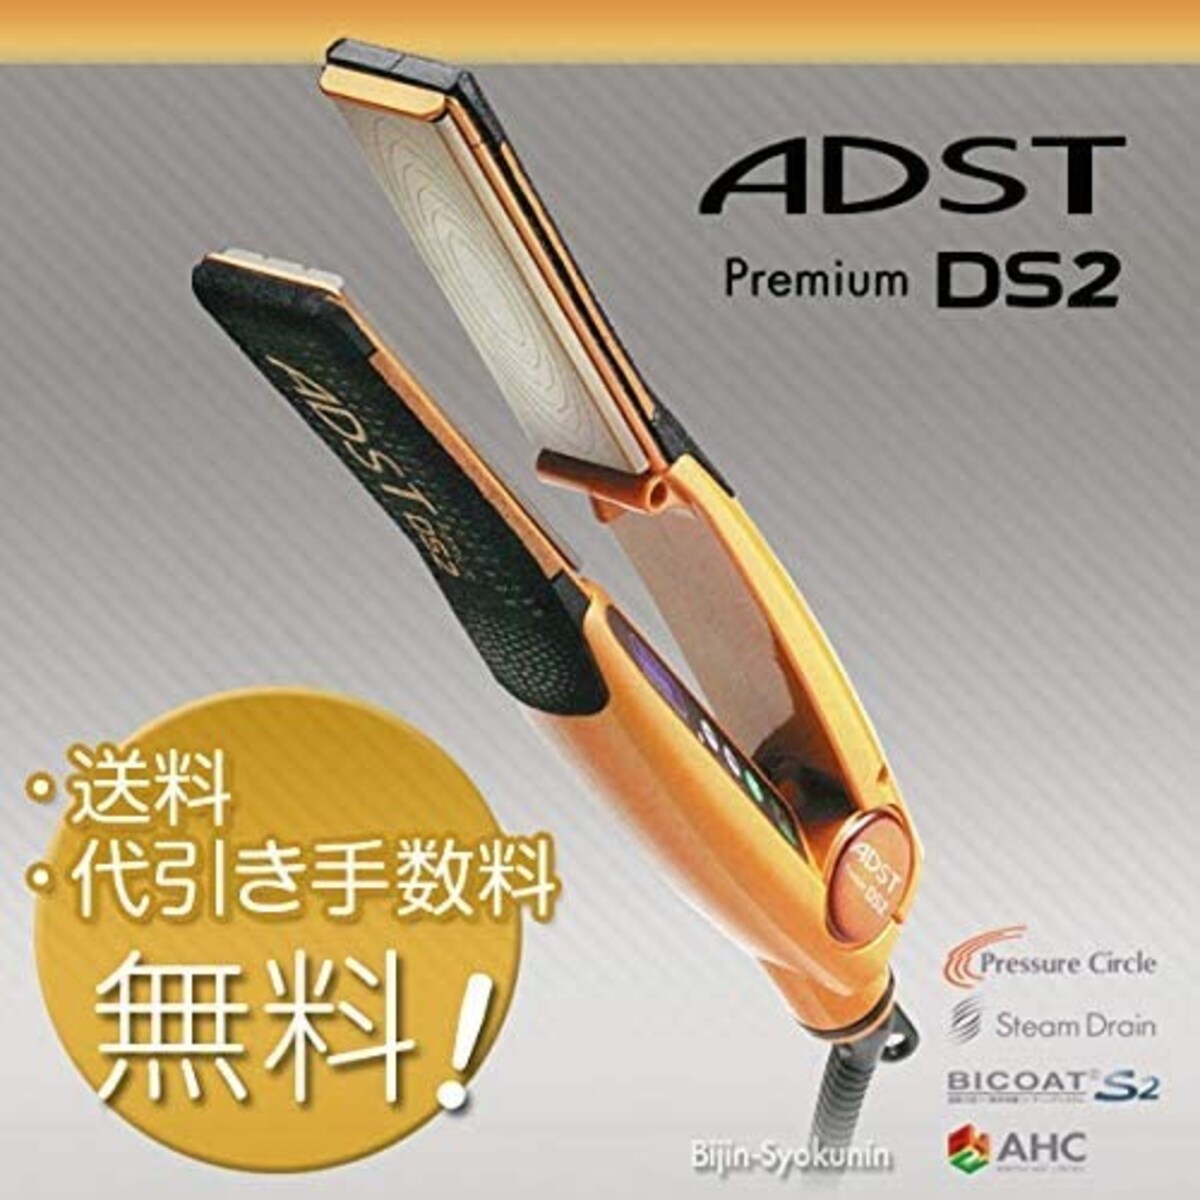  ADST Premium DS2 画像2 